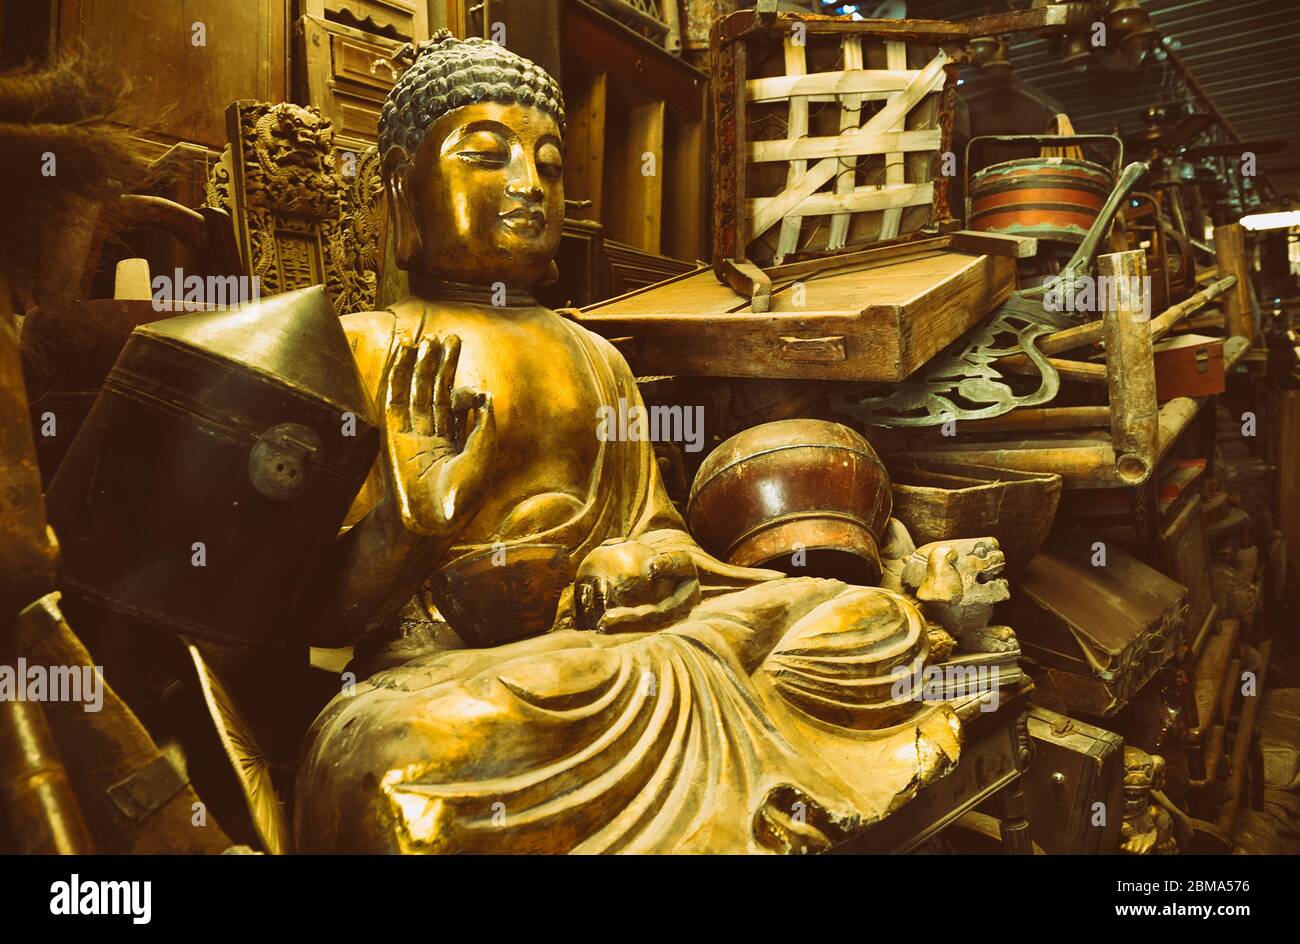 Vente de garage, statue de Bouddha et d'autres objets anciens prêts à être vendus Banque D'Images